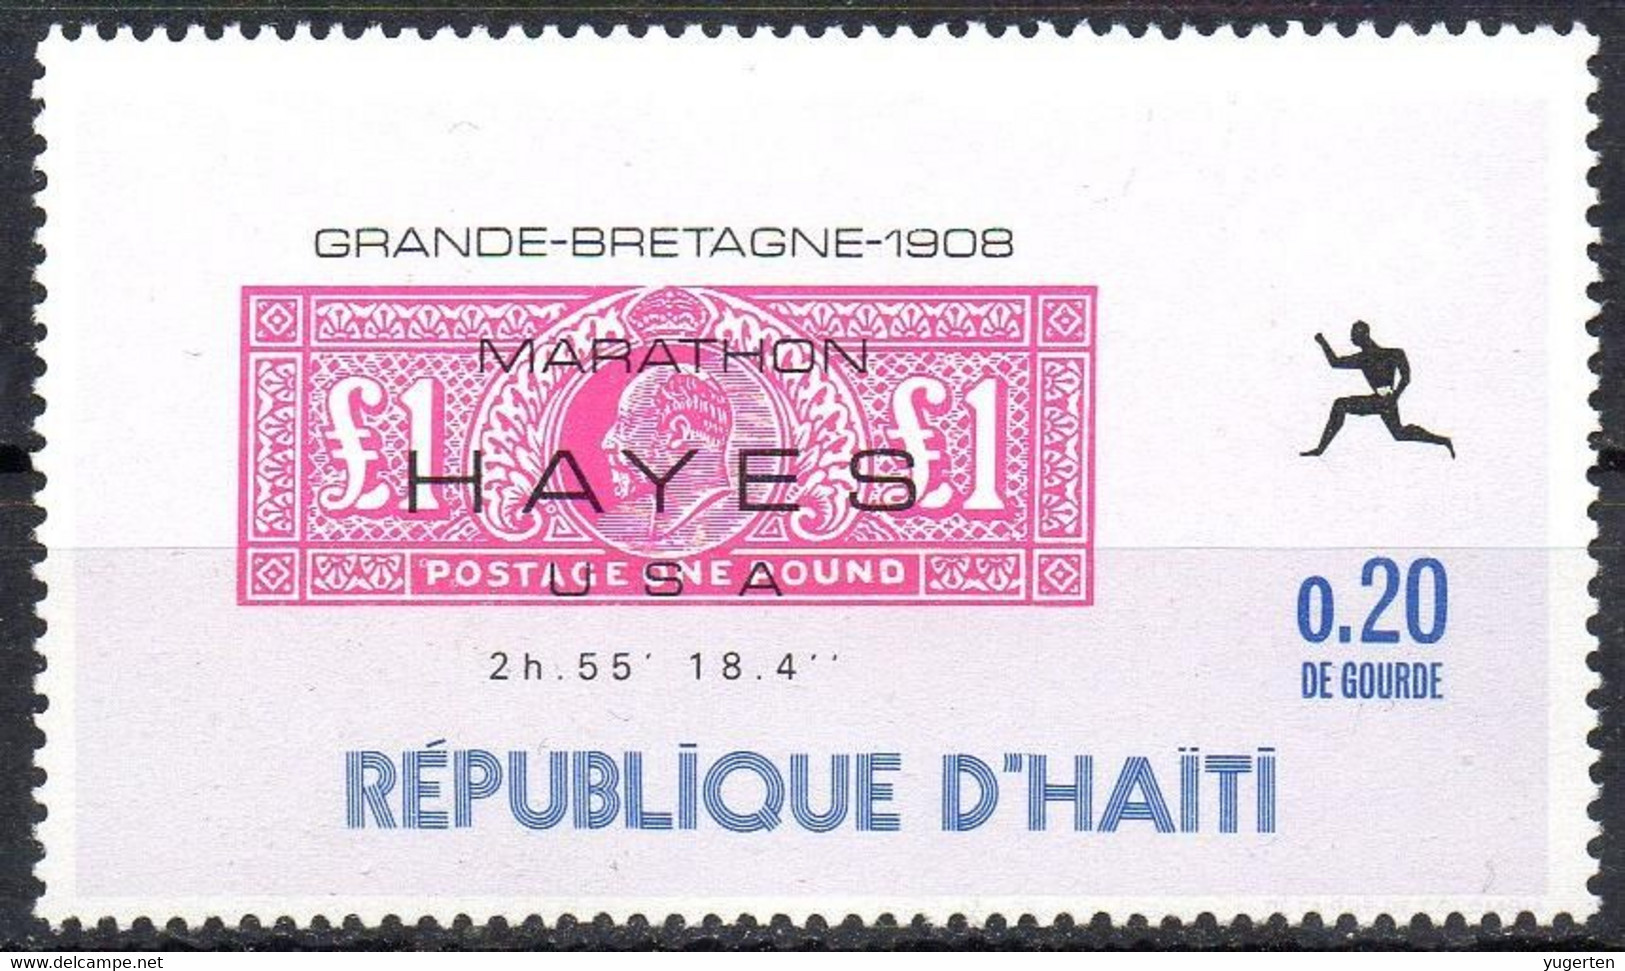 HAITI - 1969 - 1v - MNH** - Olympic Marathon Winners - Hayes - USA - Great Britain 1908 - Olympics Maratón Maratona - Verano 1908: Londres